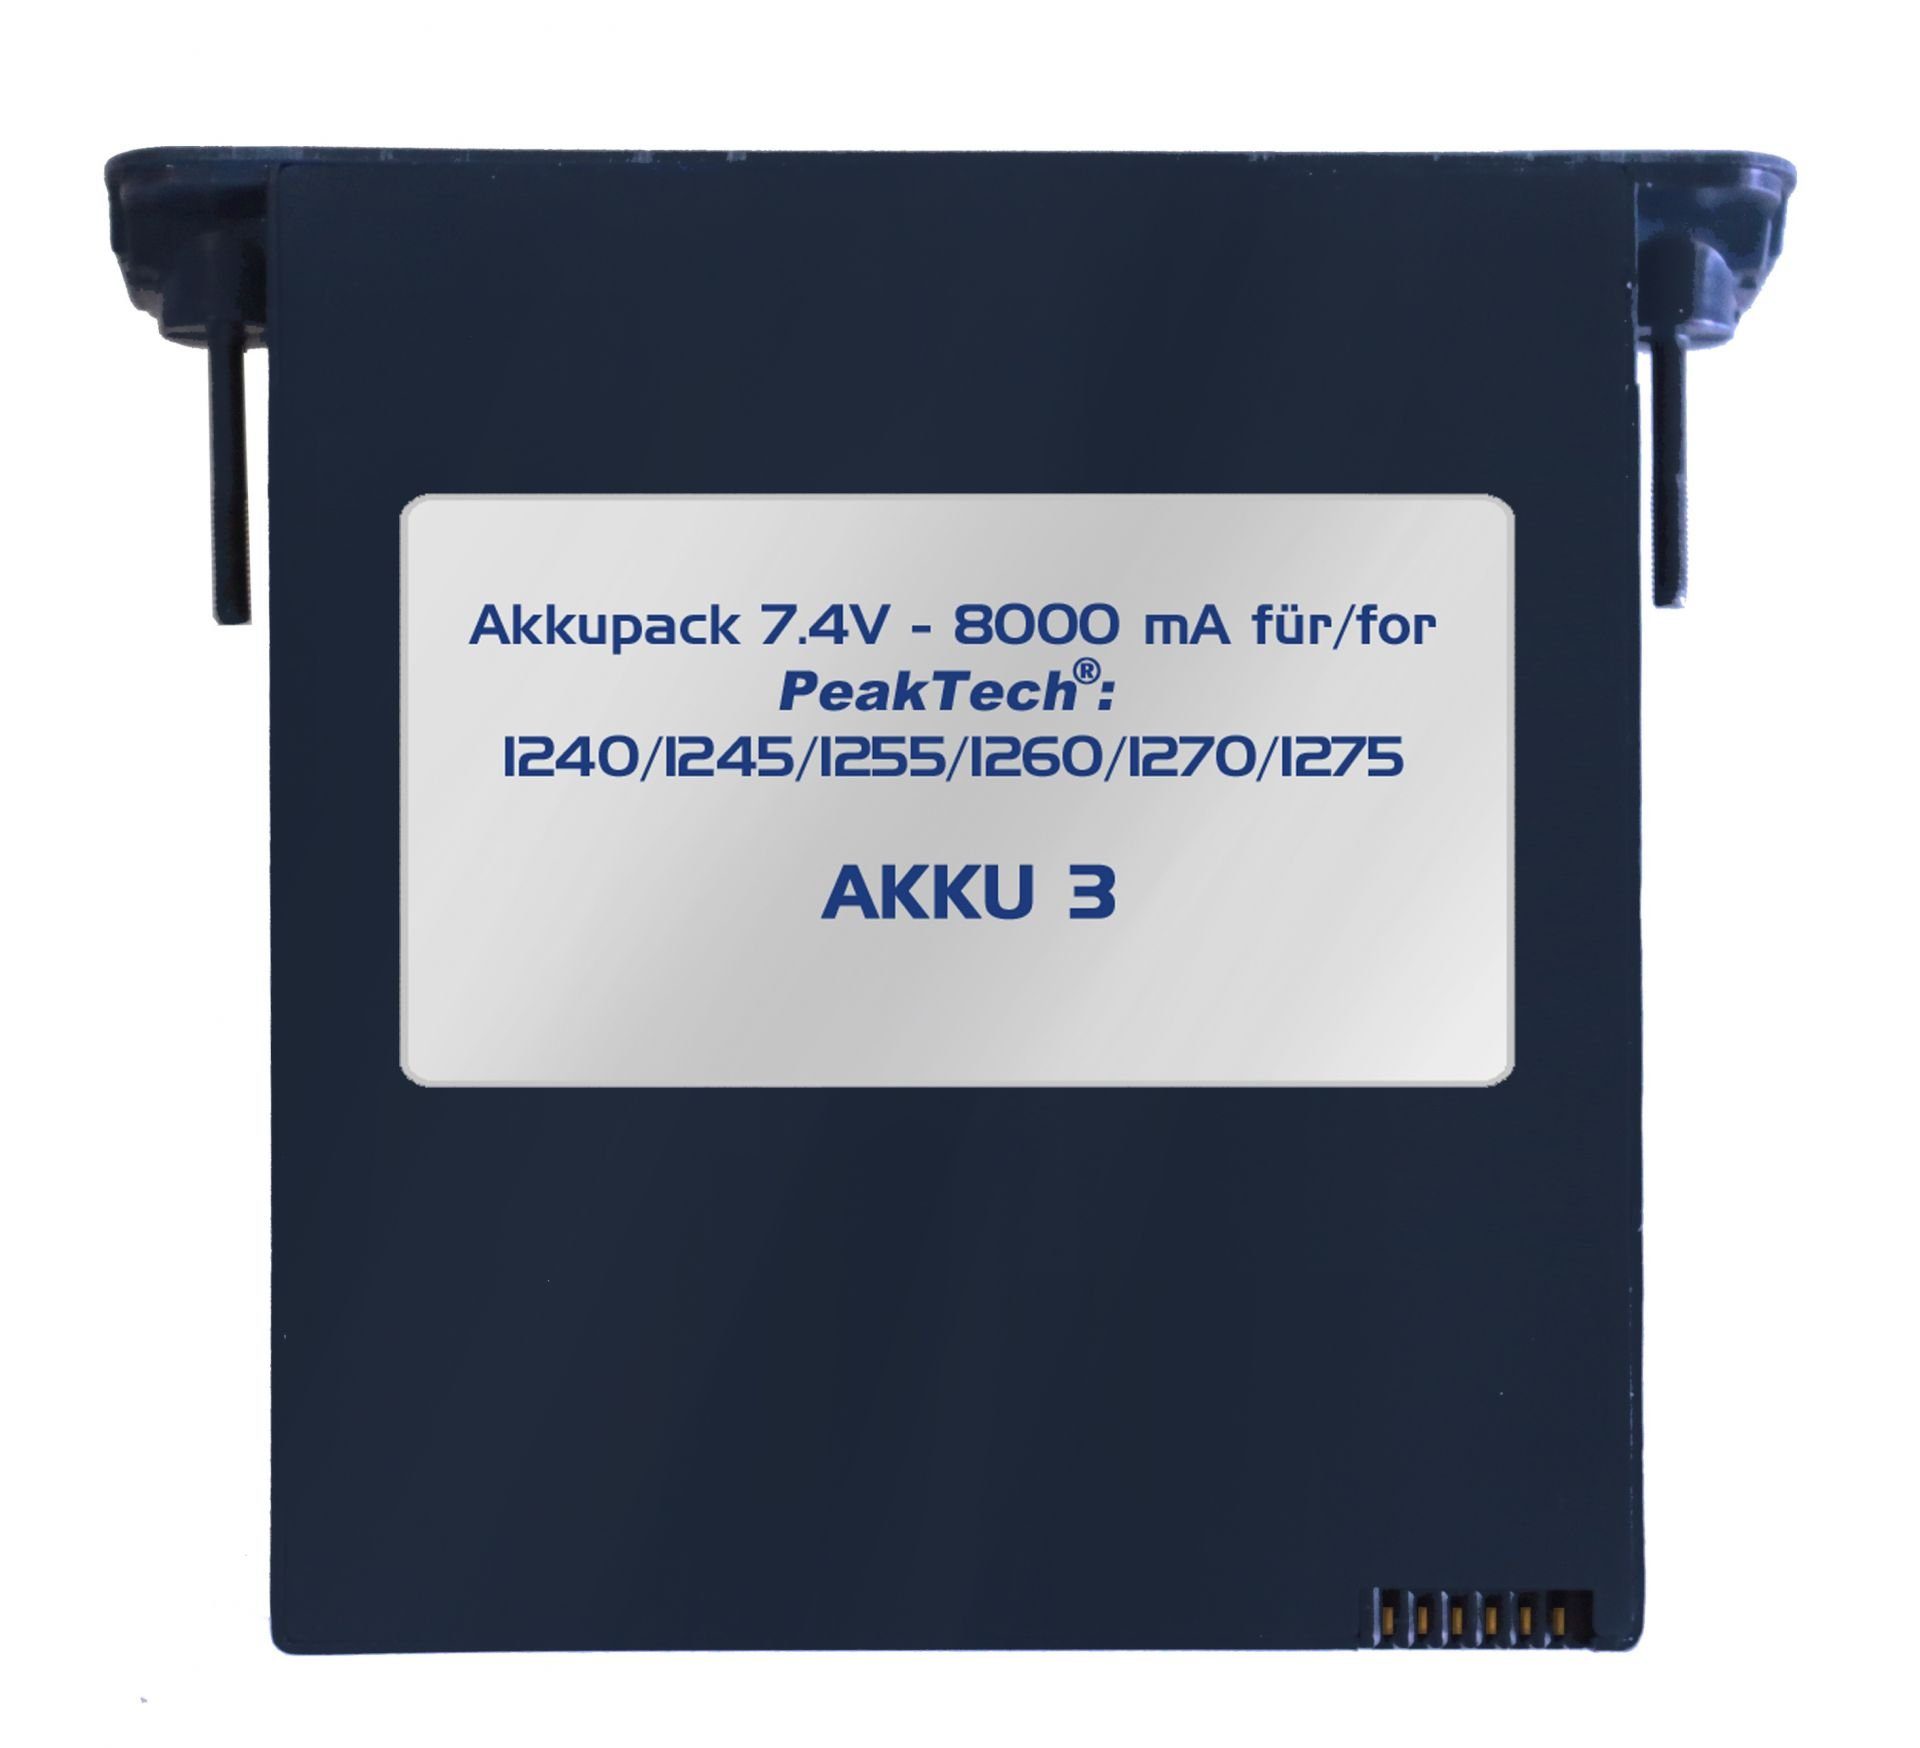 PeakTech PeakTech AKKU 3: Li-Po Akku 7,4 V - 8000 mA/h für PeakTech 1240/1245/1255/1260/1270/1275 Akku